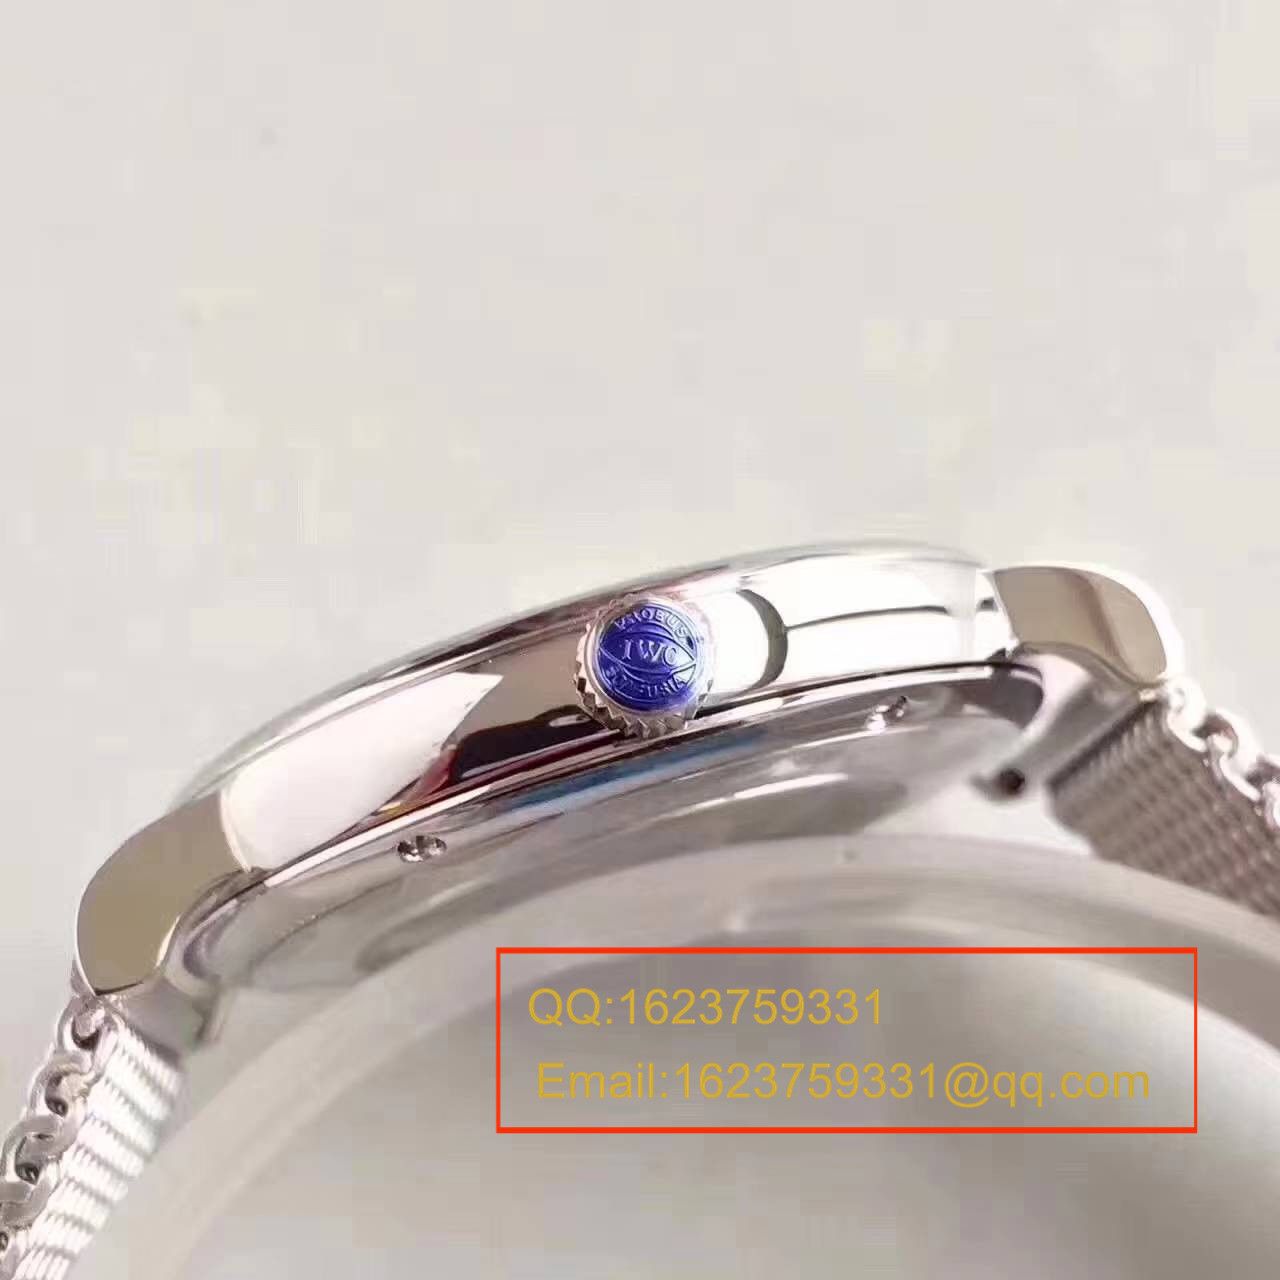 【独家视频测评MK厂一比一超A精仿手表】万国柏涛菲诺系列IW356505精钢米兰表链腕表 